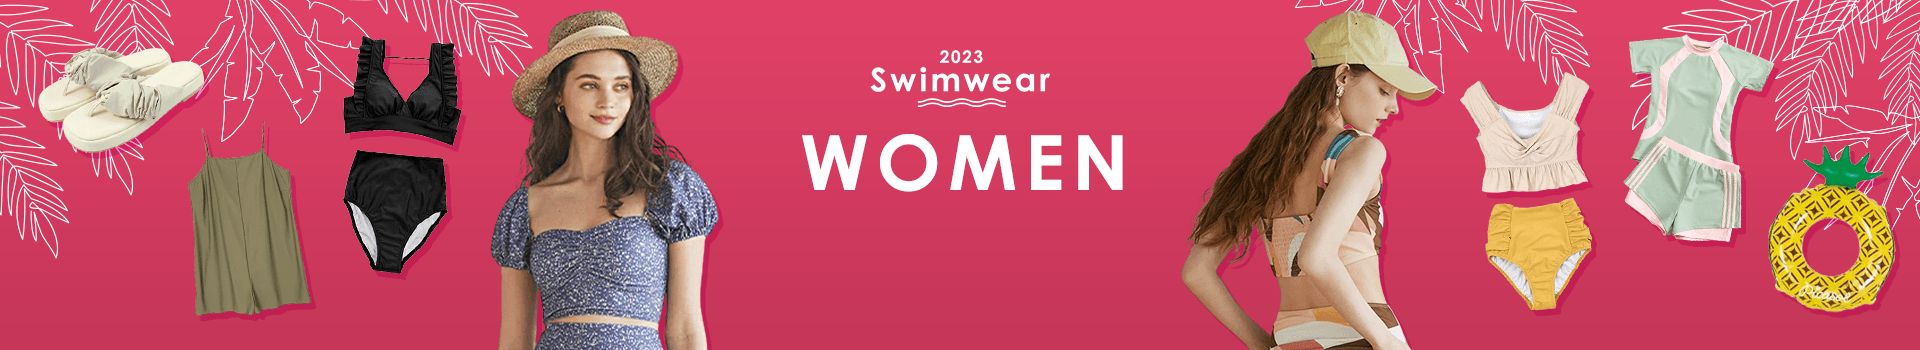 WOMEN 2023 Swimwear